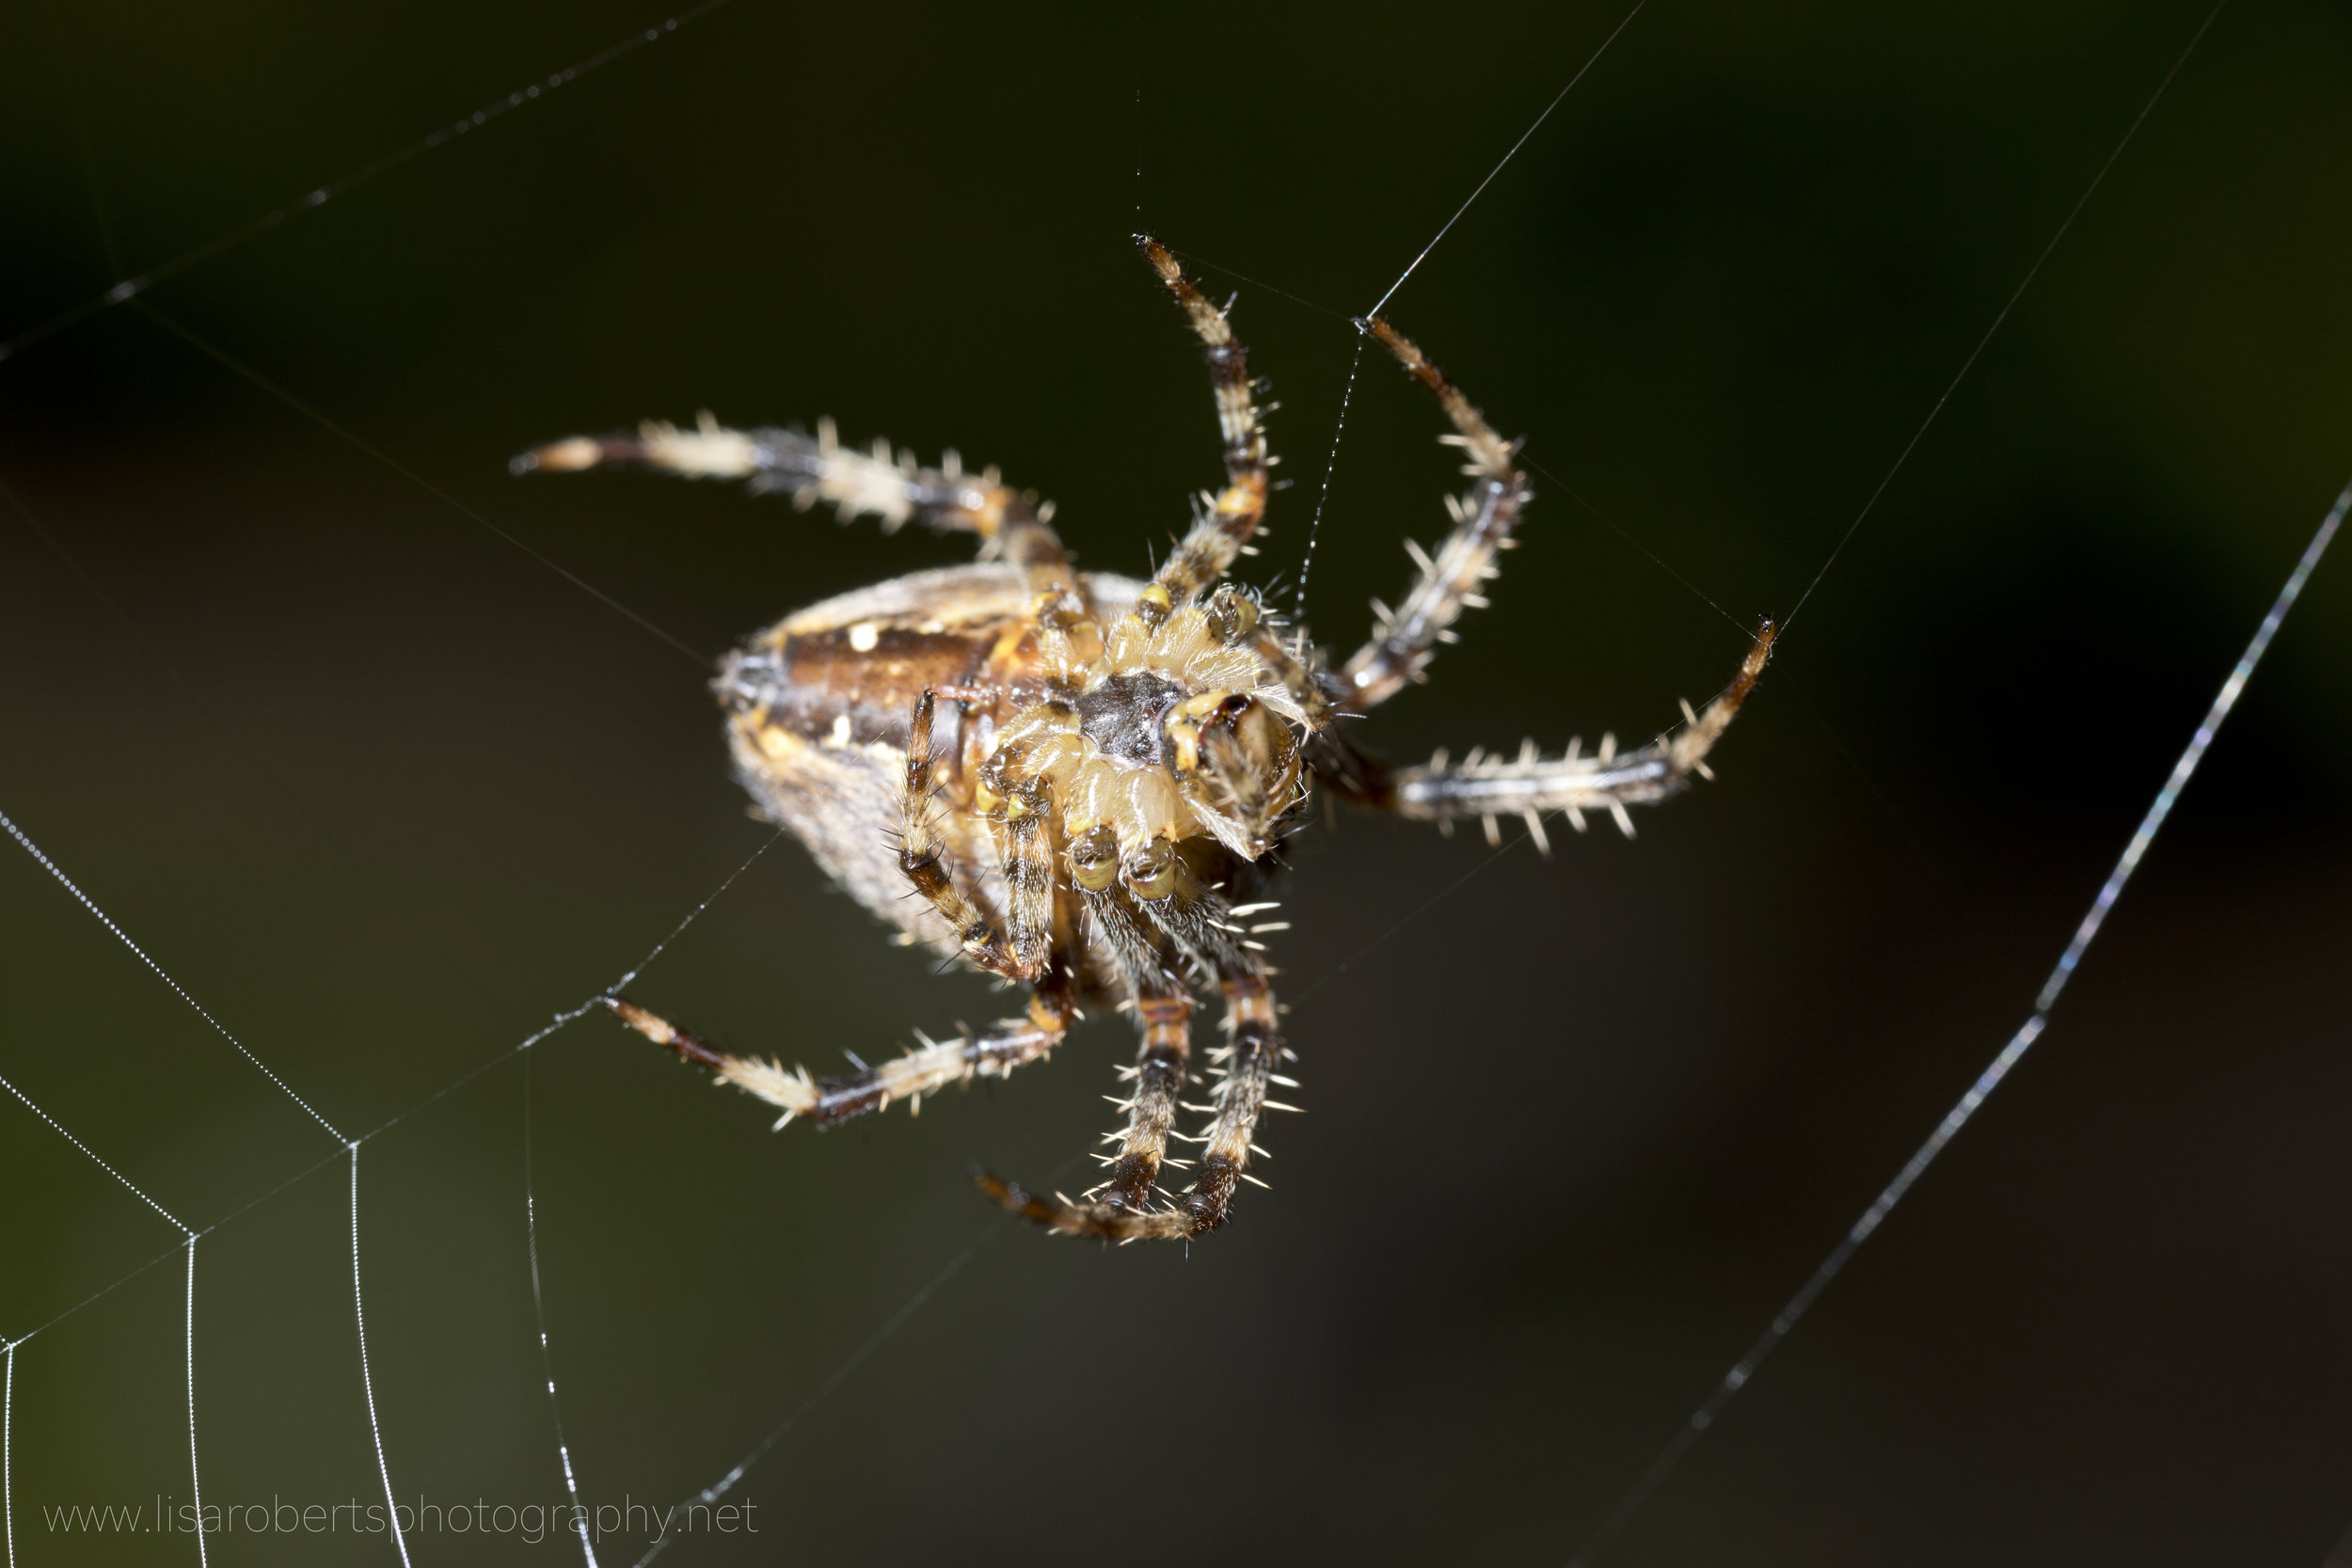  European Garden spider, view of abdomen 